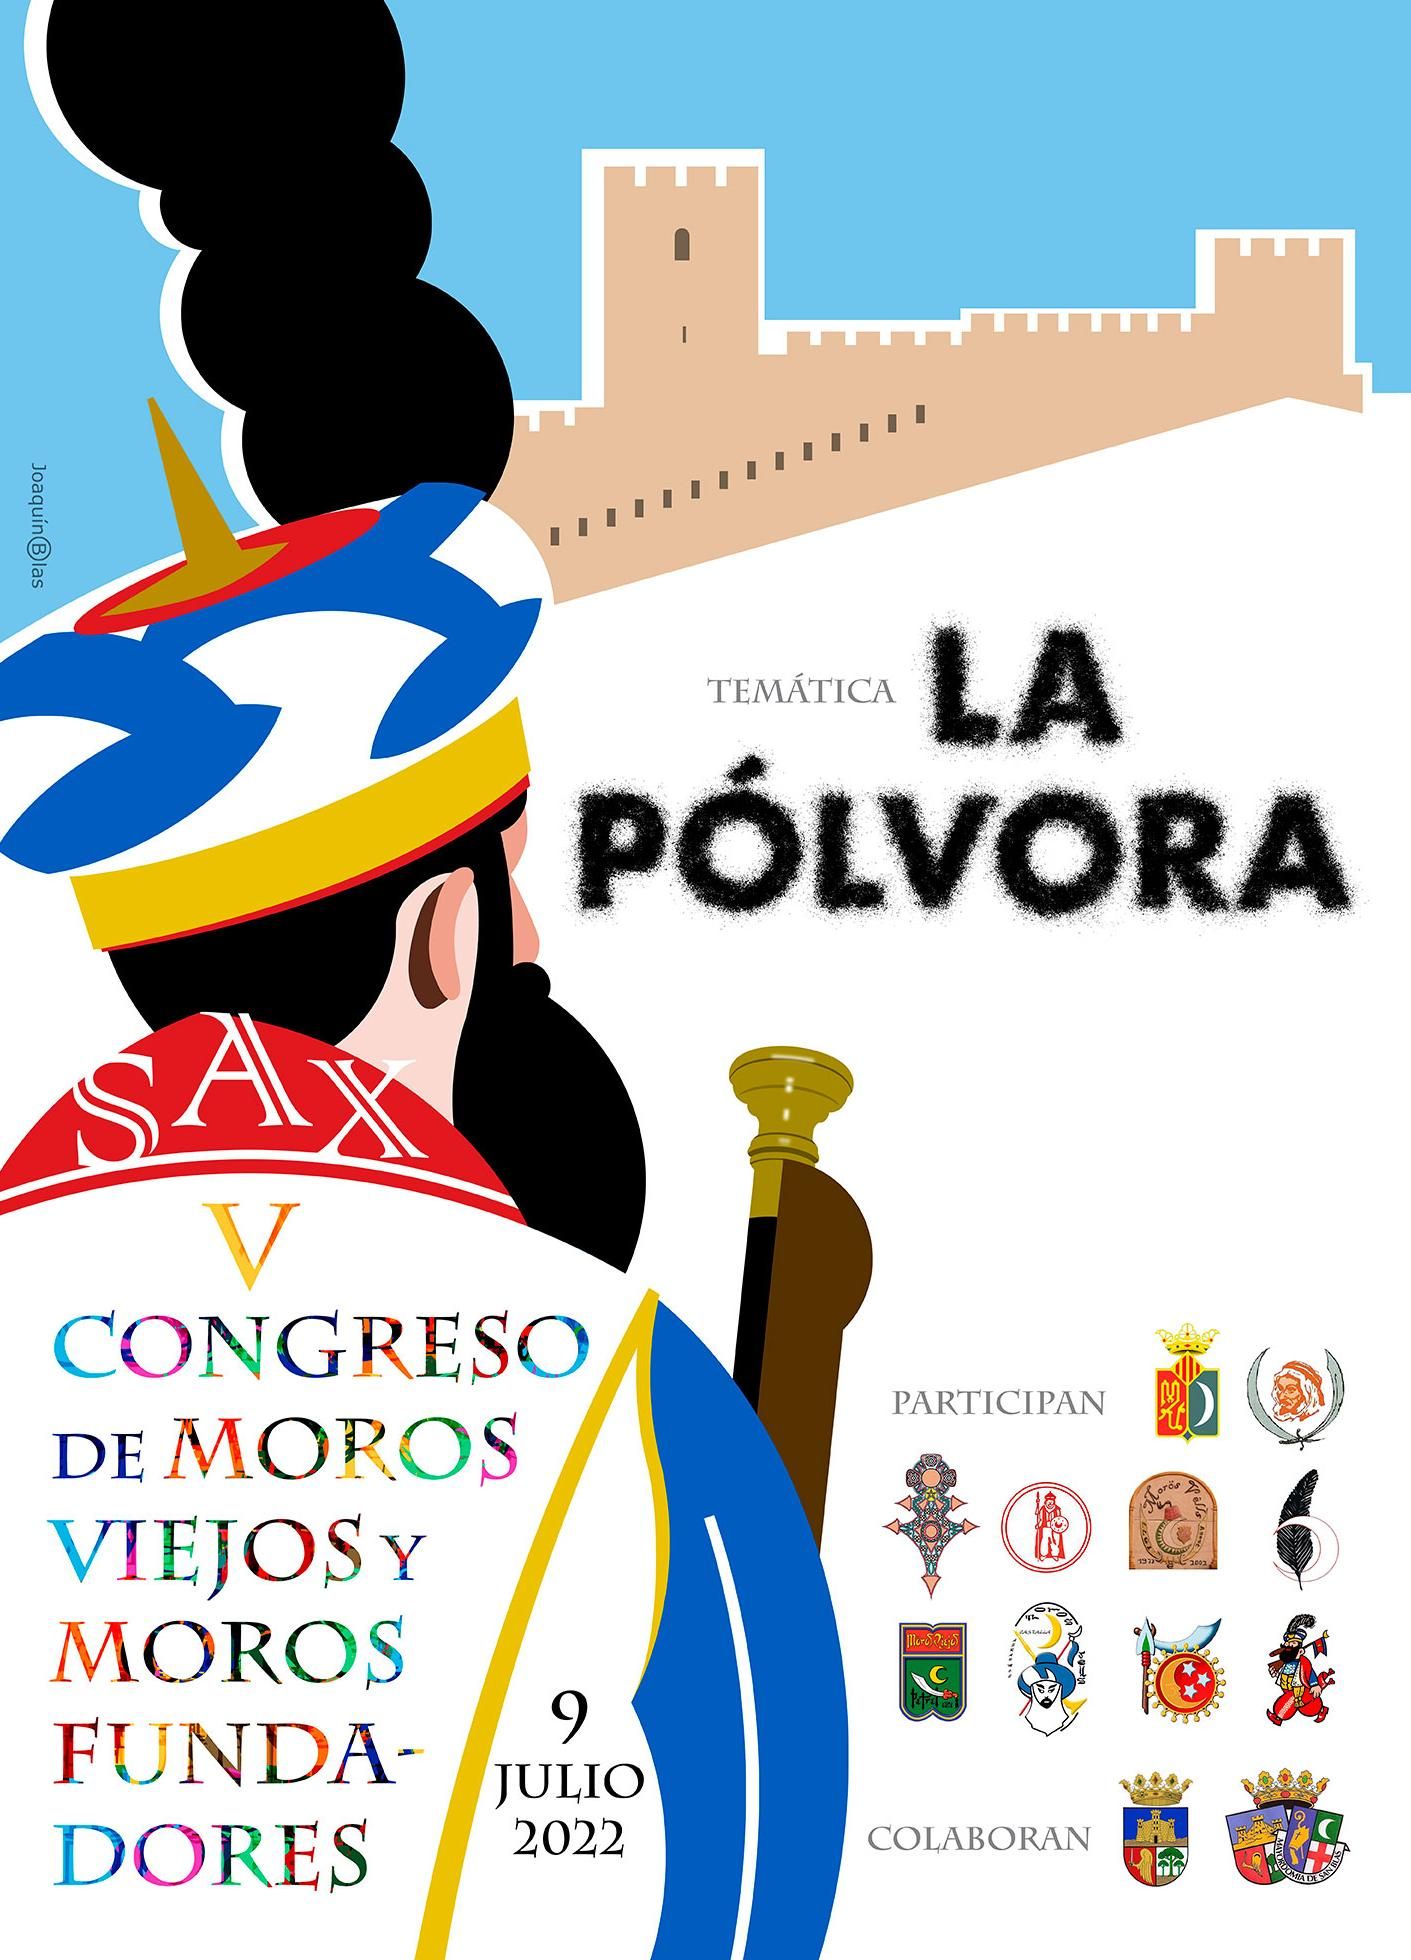 El cartel del V Congreso de Moros Viejos y Moros Fundadores elaborado por el artista incomprendido Joaquín Blas.